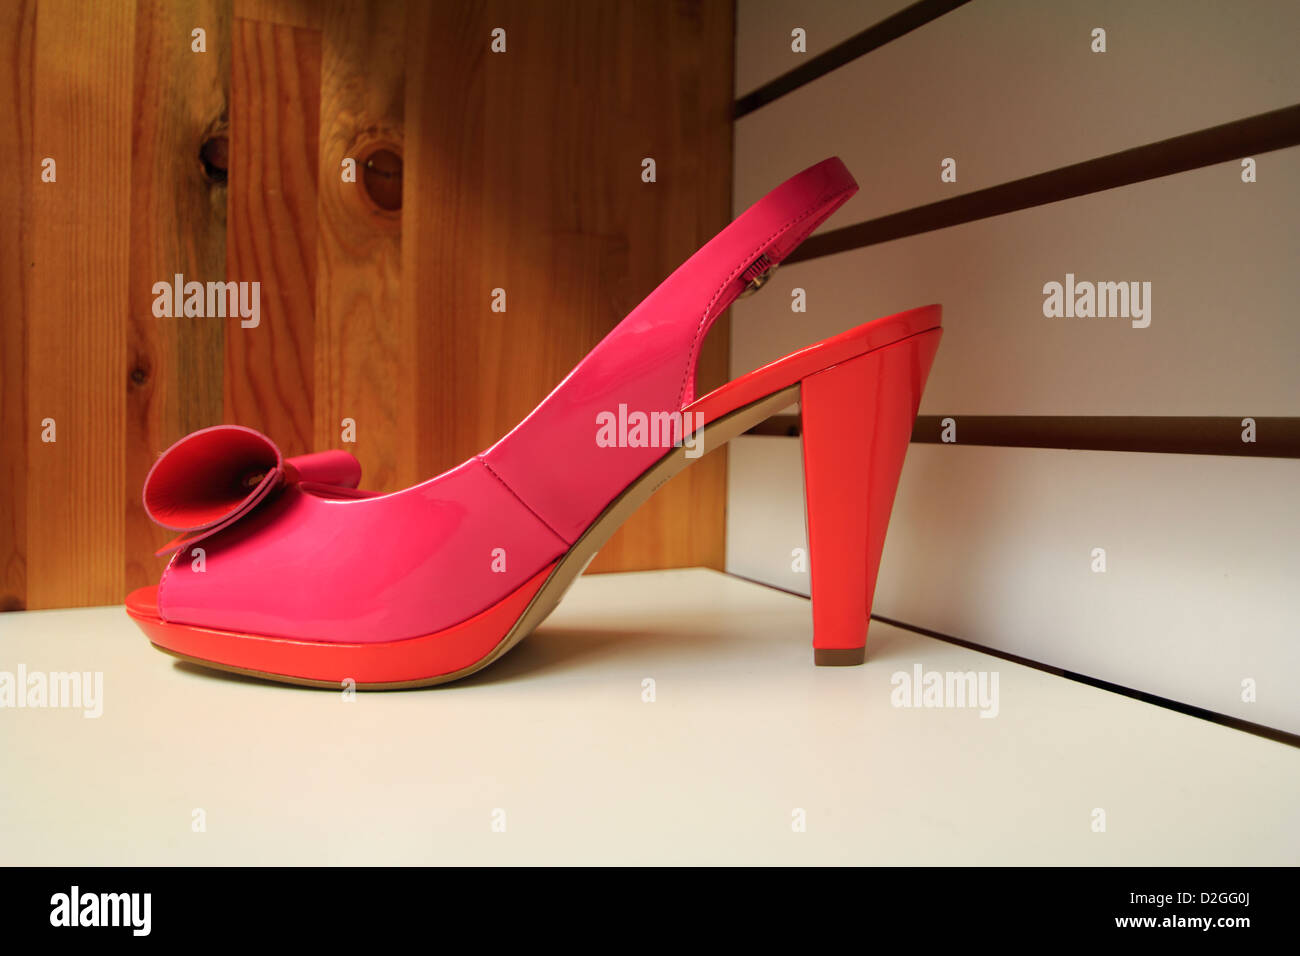 Une dame rose's high heel shoe sur une étagère Banque D'Images